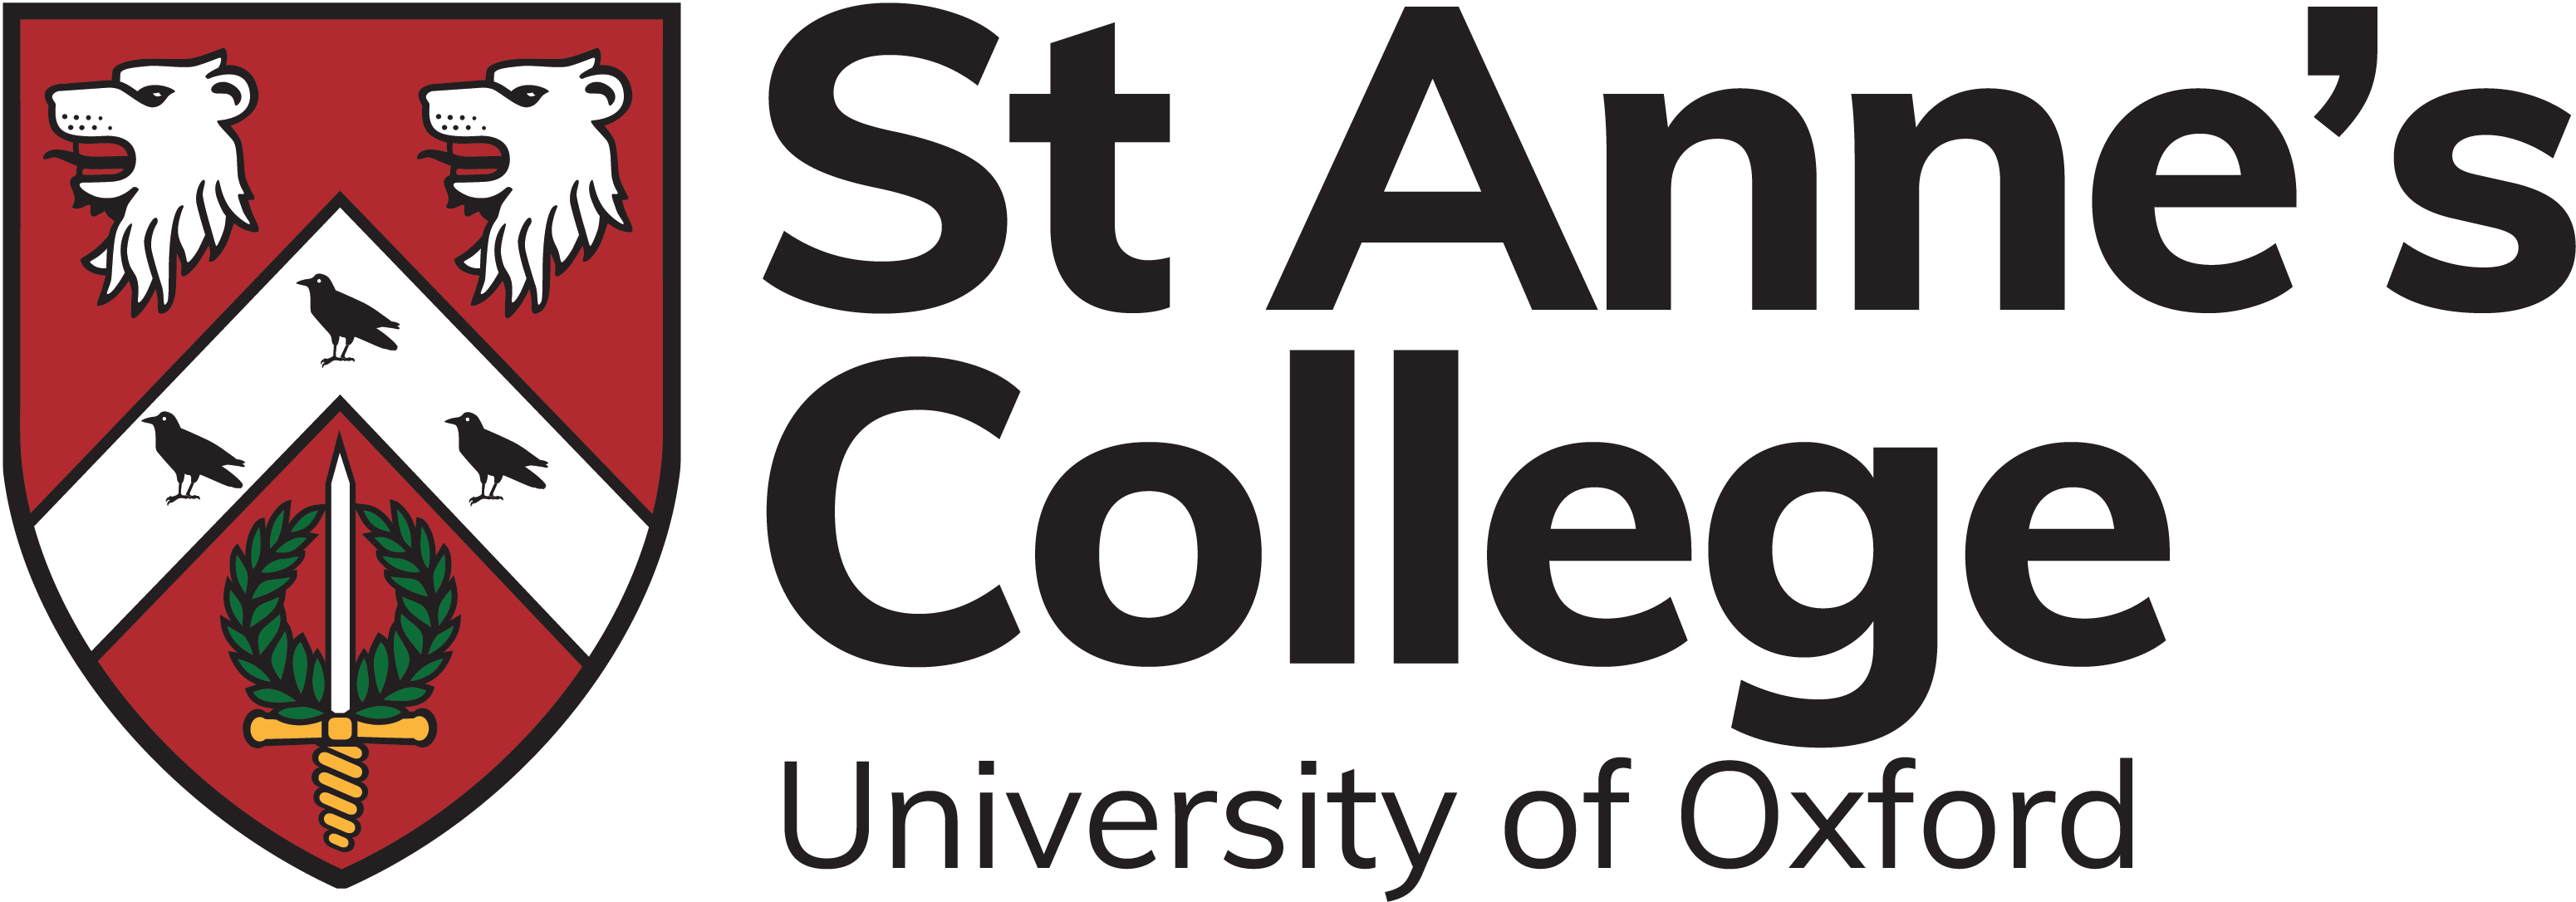 St Anne's College crest